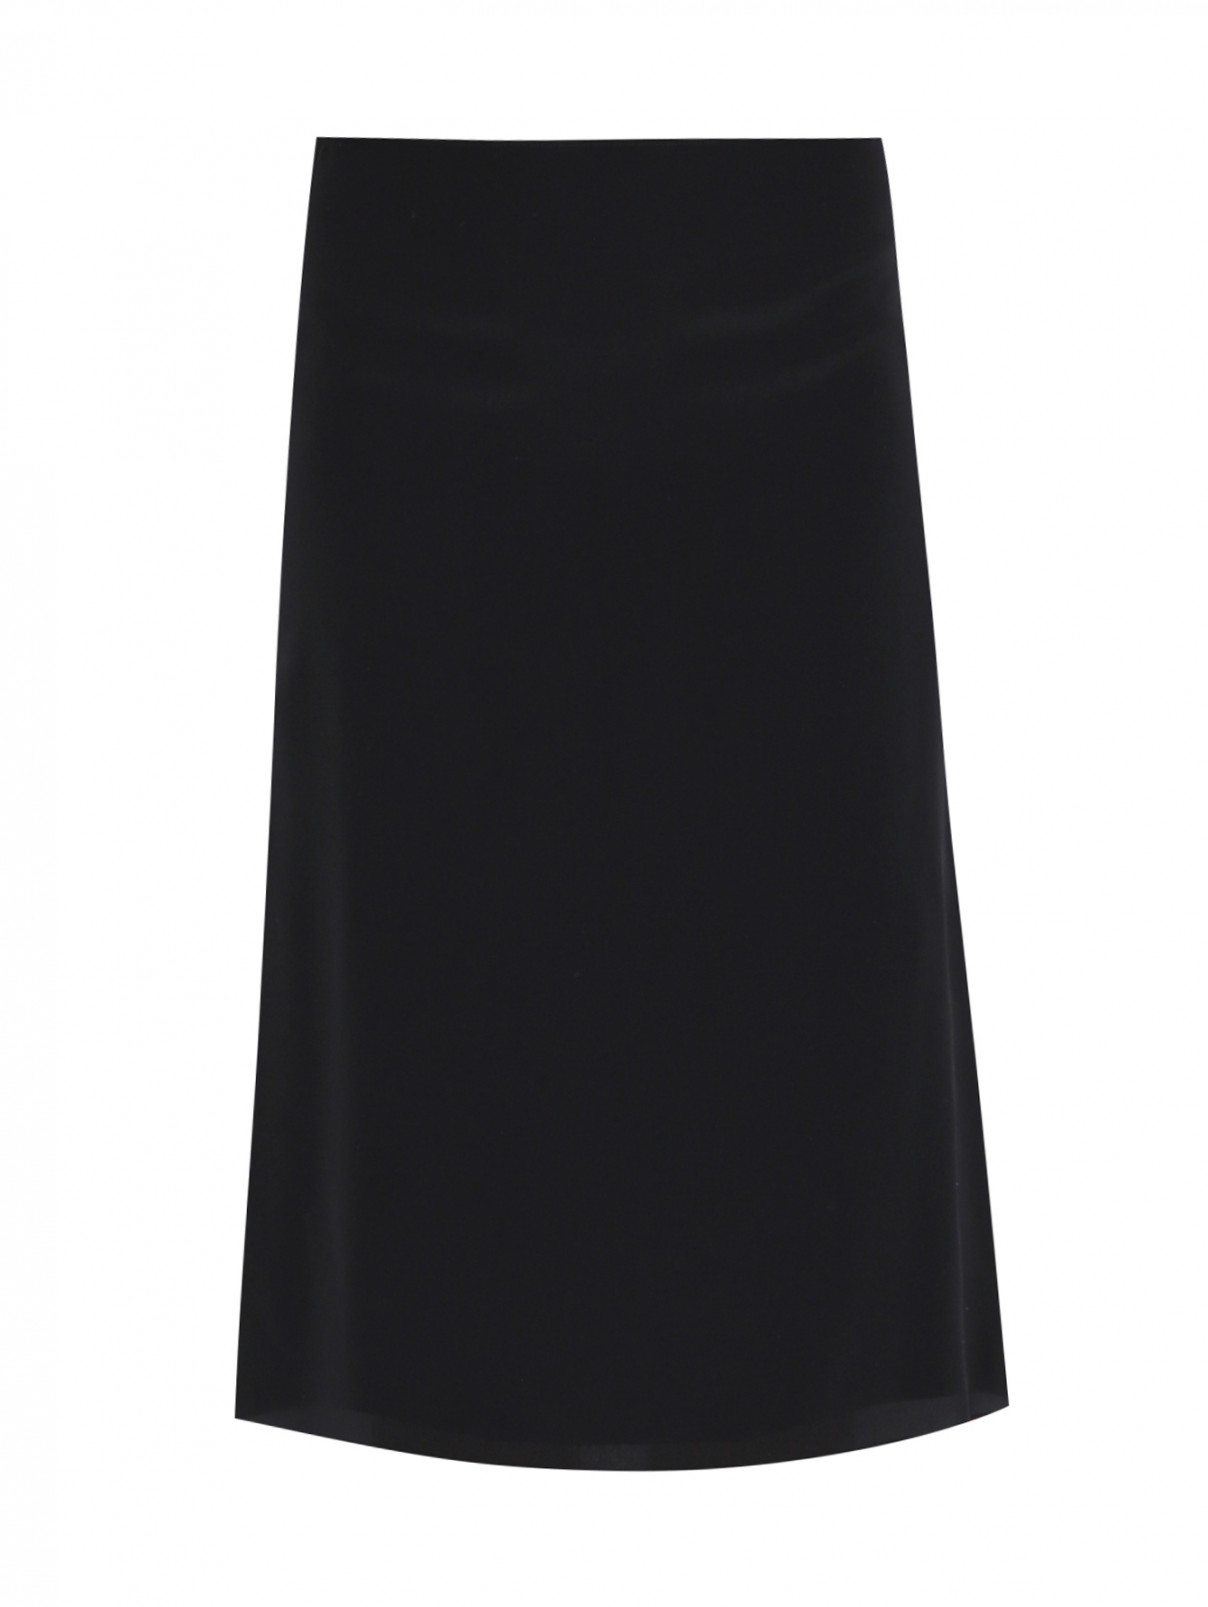 Юбка однотонная из шелка Nina Ricci  –  Общий вид  – Цвет:  Черный